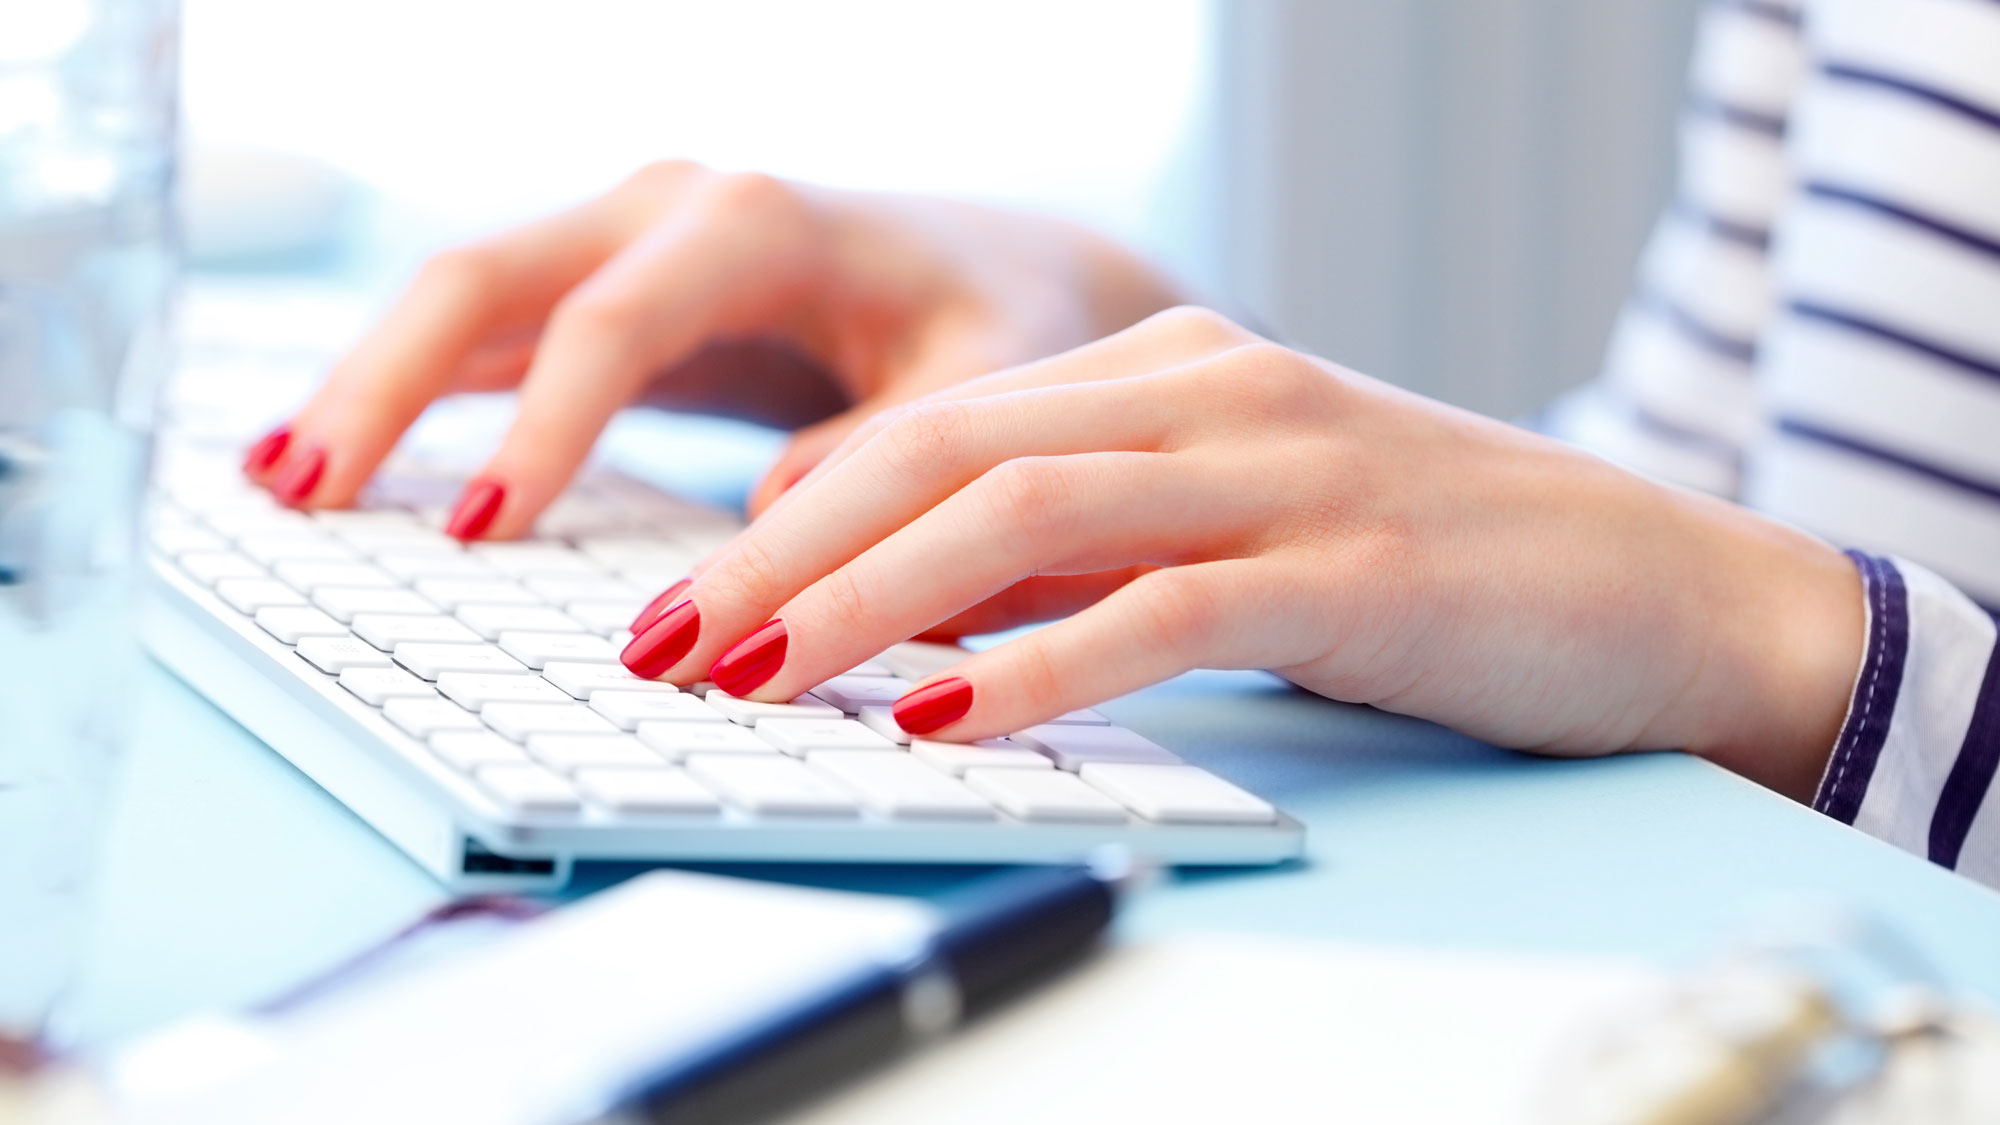 nærbilde av hender til ung kvinne med rød neglelakk på tastatur